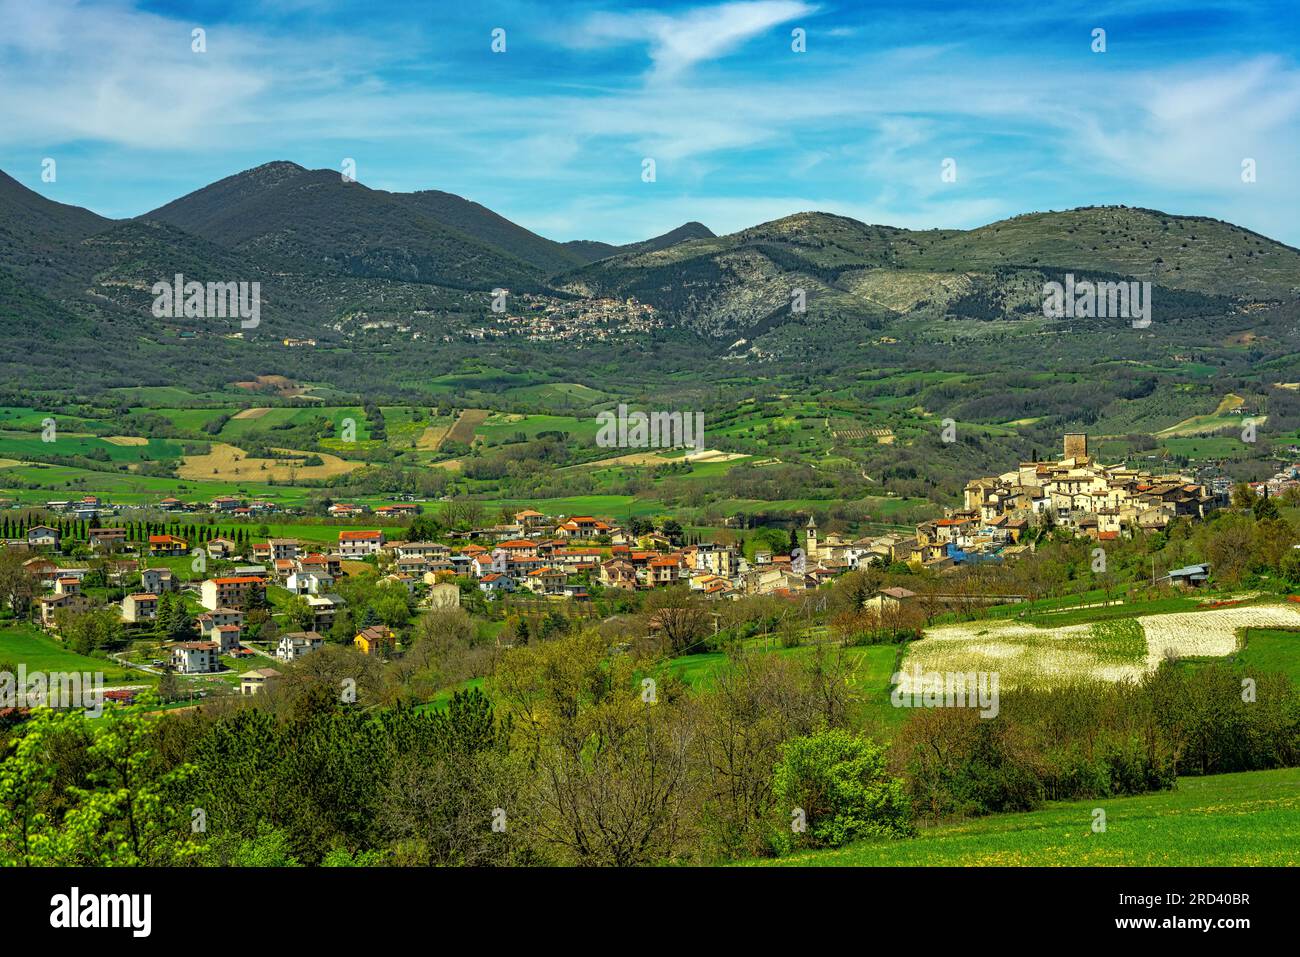 Le petit village de Castel di Ieri placé parmi les montagnes du Parc naturel régional de Sirente Velino dans la vallée de Subequana Banque D'Images